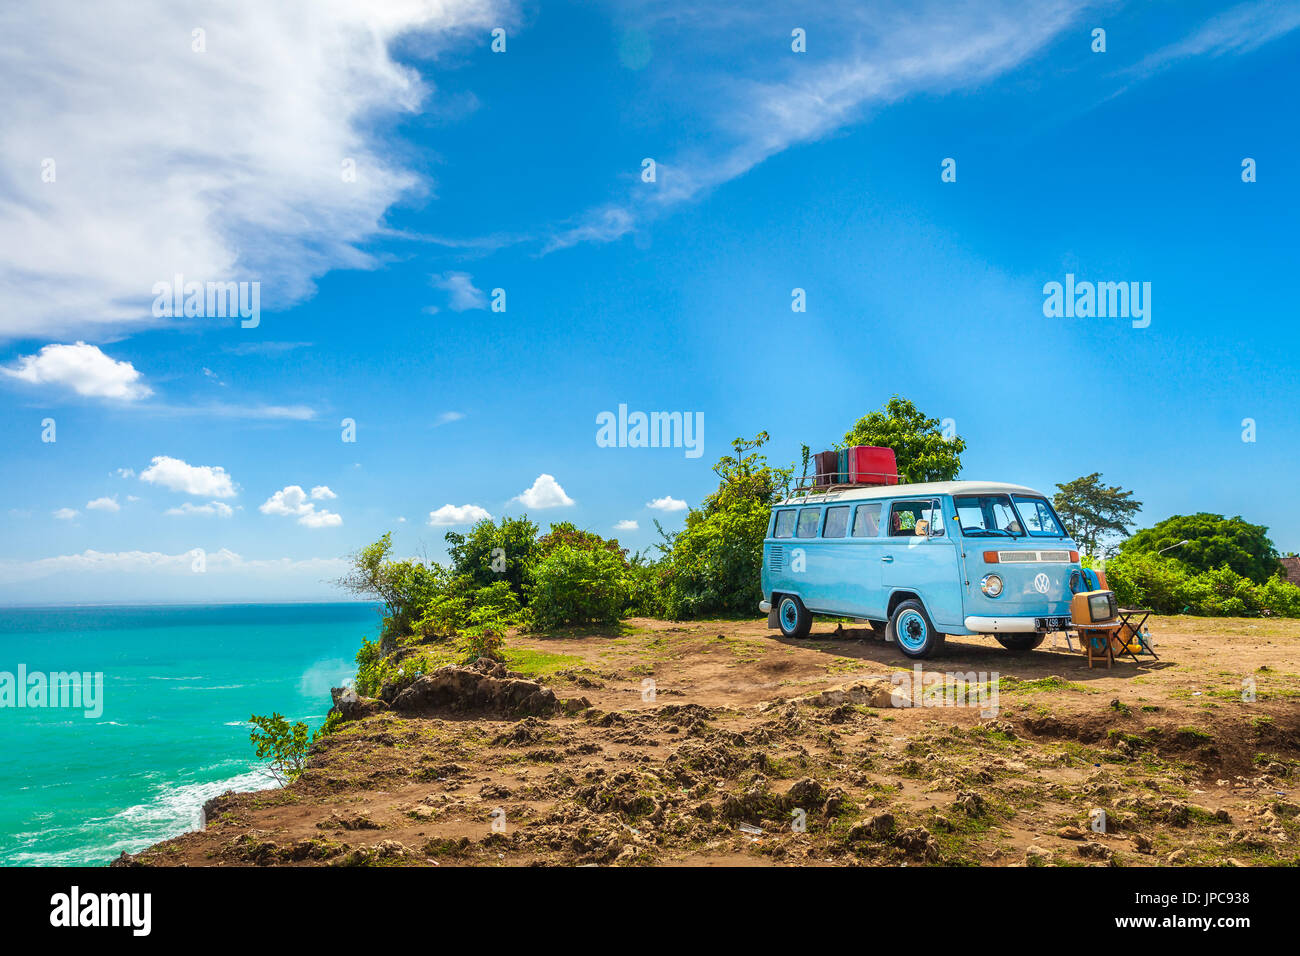 BALI, Indonesien, Jimbaran Strand - 1. Mai / Sommer Urlaub Konzept schöne Vintage Retro-Auto Volkswagen van Hippie-Minibus mit Reise-Koffer auf tr Stockfoto